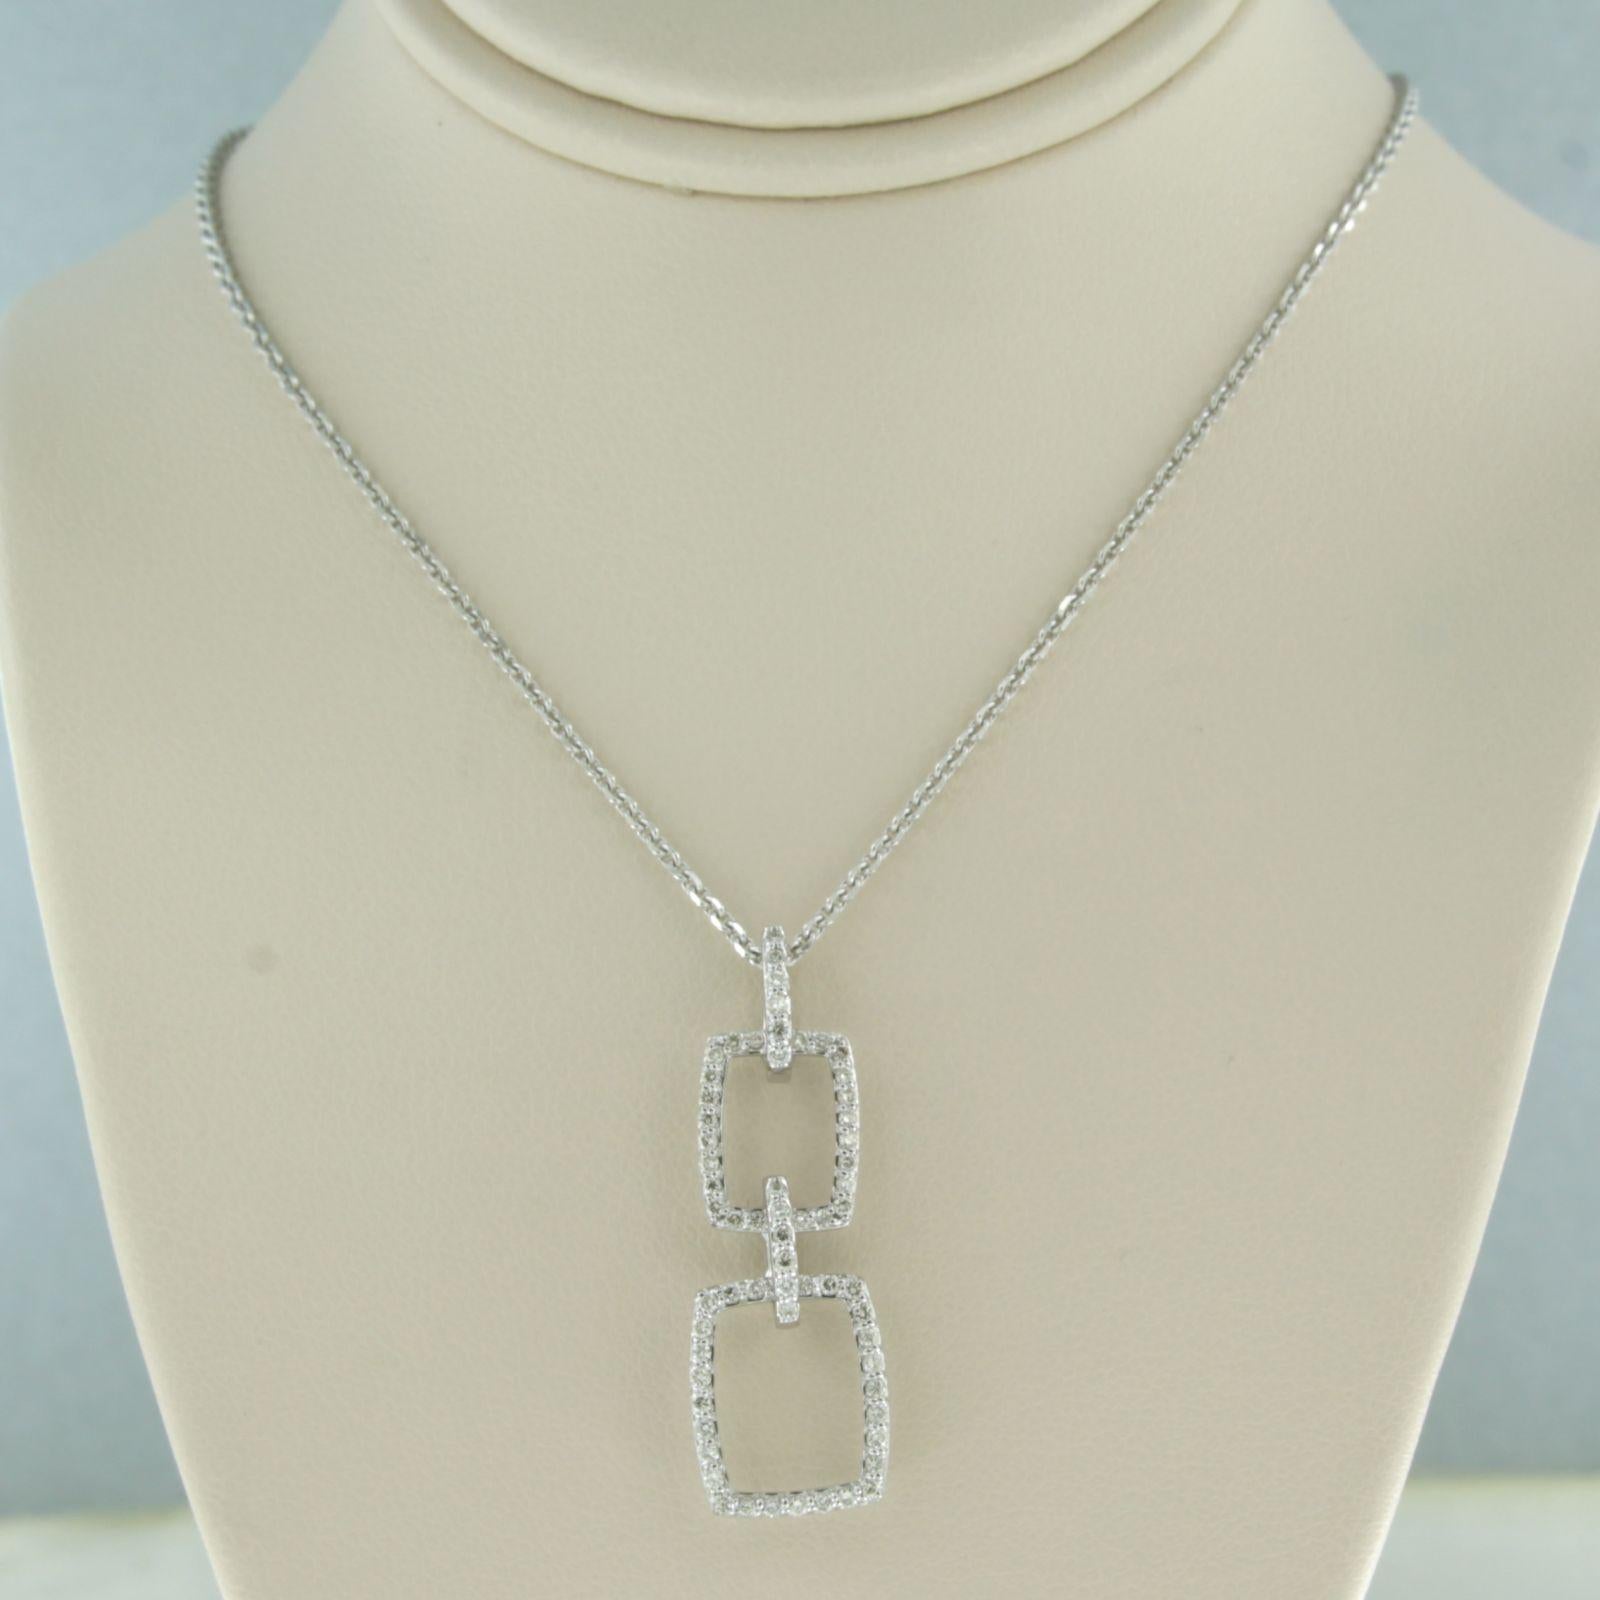 Collier et pendentif en or blanc 18k sertis de diamants taille brillant jusqu'à. 0.38ct - F/G - VS/SI - longueur 40 cm

description détaillée :

Le collier mesure 40 cm de long et 0,8 mm de large.

le pendentif mesure environ 3,3 cm sur 1,1 cm de